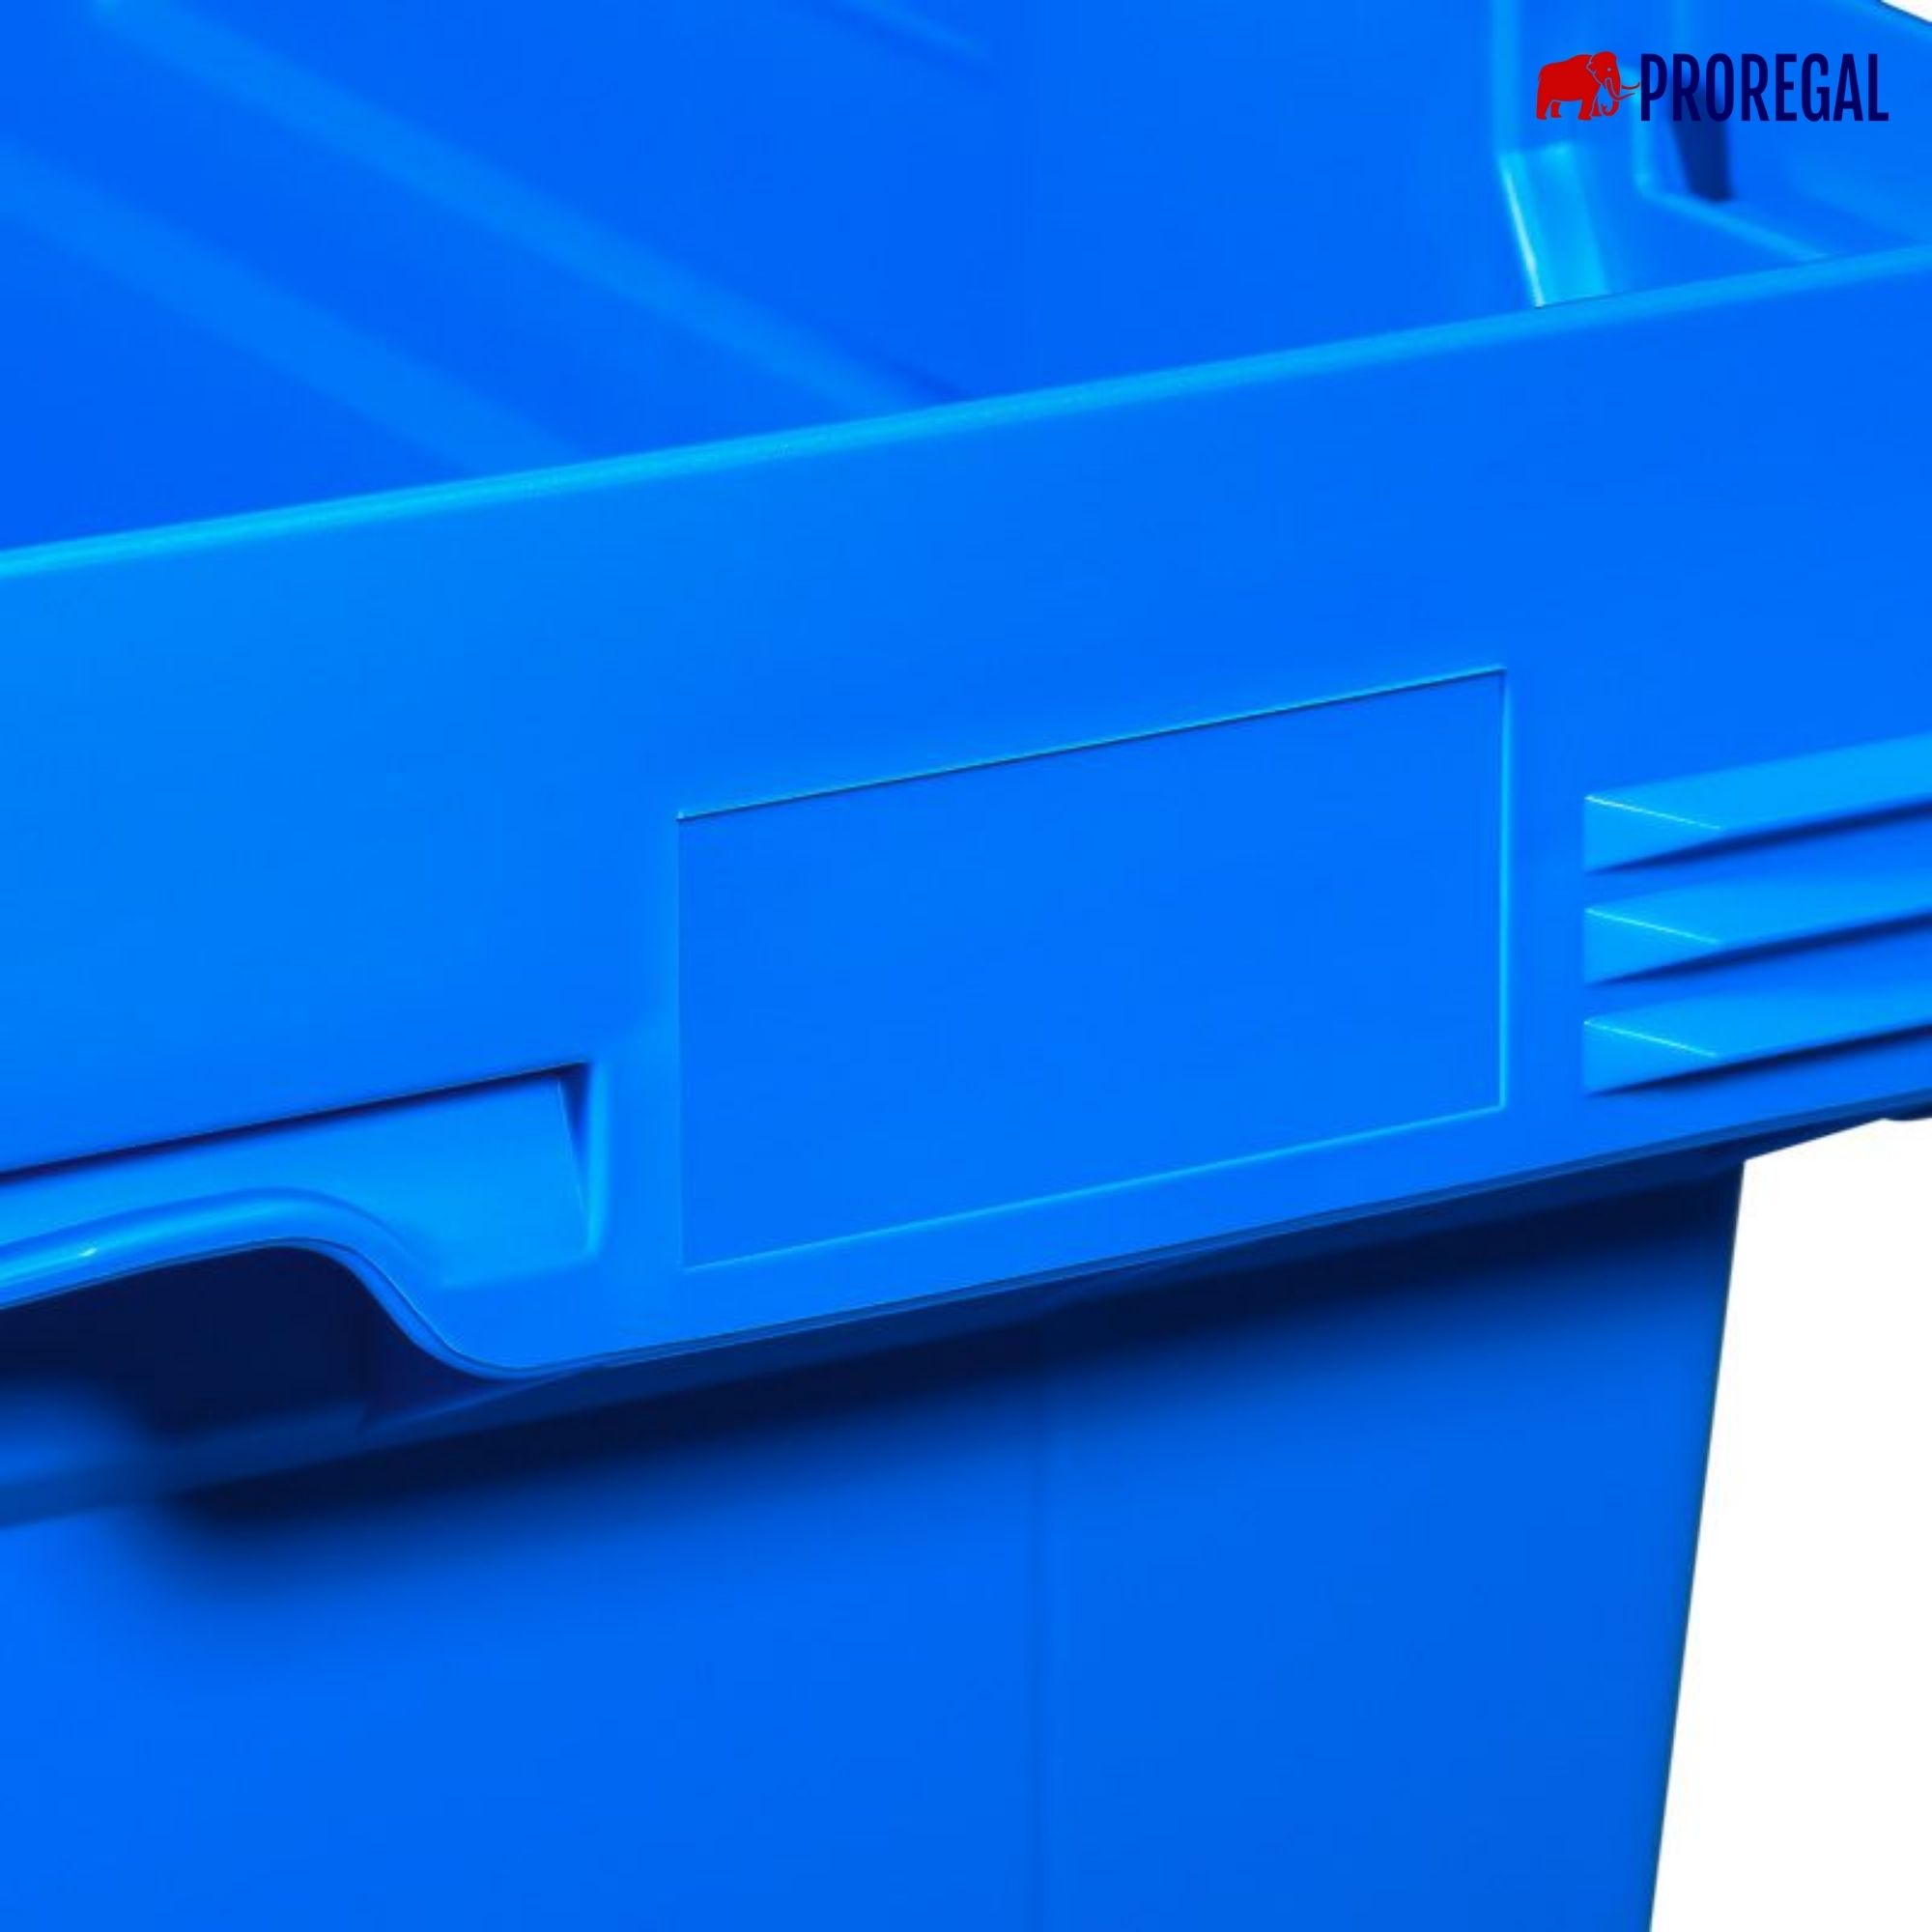 Conical Mehrweg-Stapelbehälter mit Stapelbügel Blau | HxBxT 27,3x40x60cm | 47 Liter | Lagerbox Eurobox Transportbox Transportbehälter Stapelbehälter